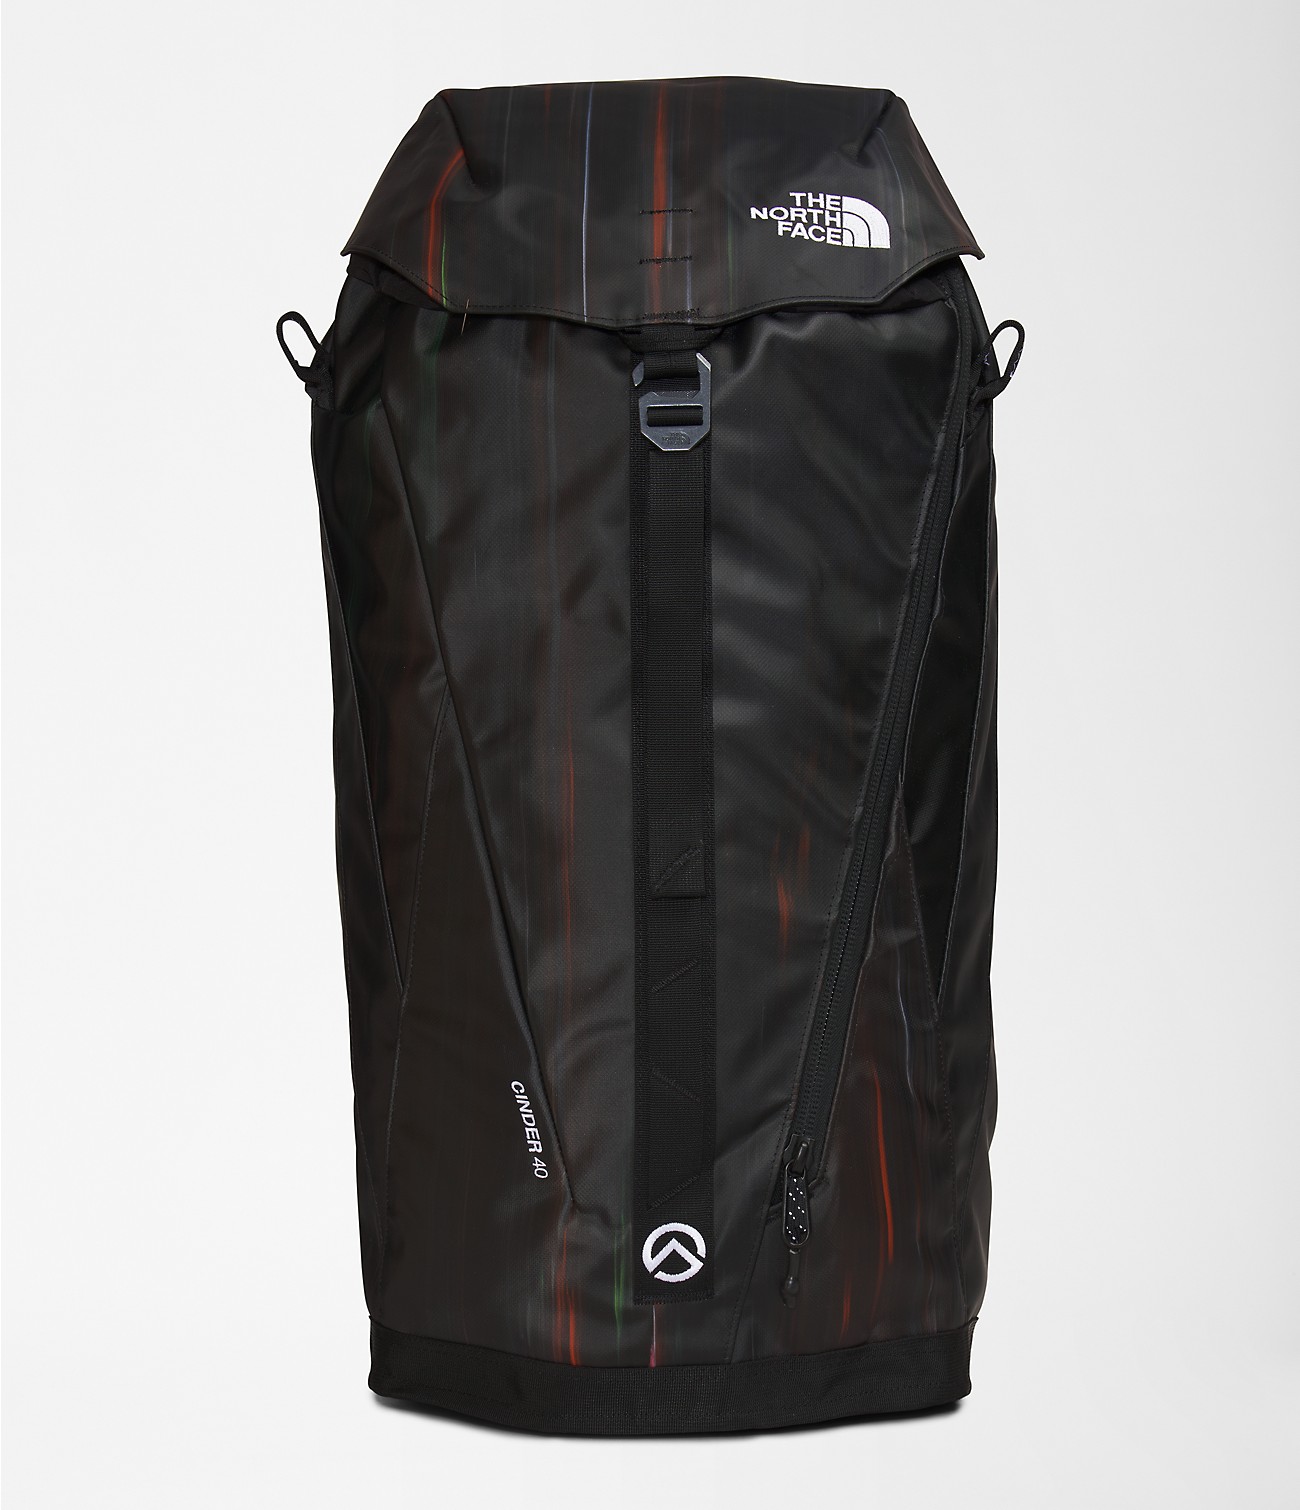 Cinder 40 Backpack